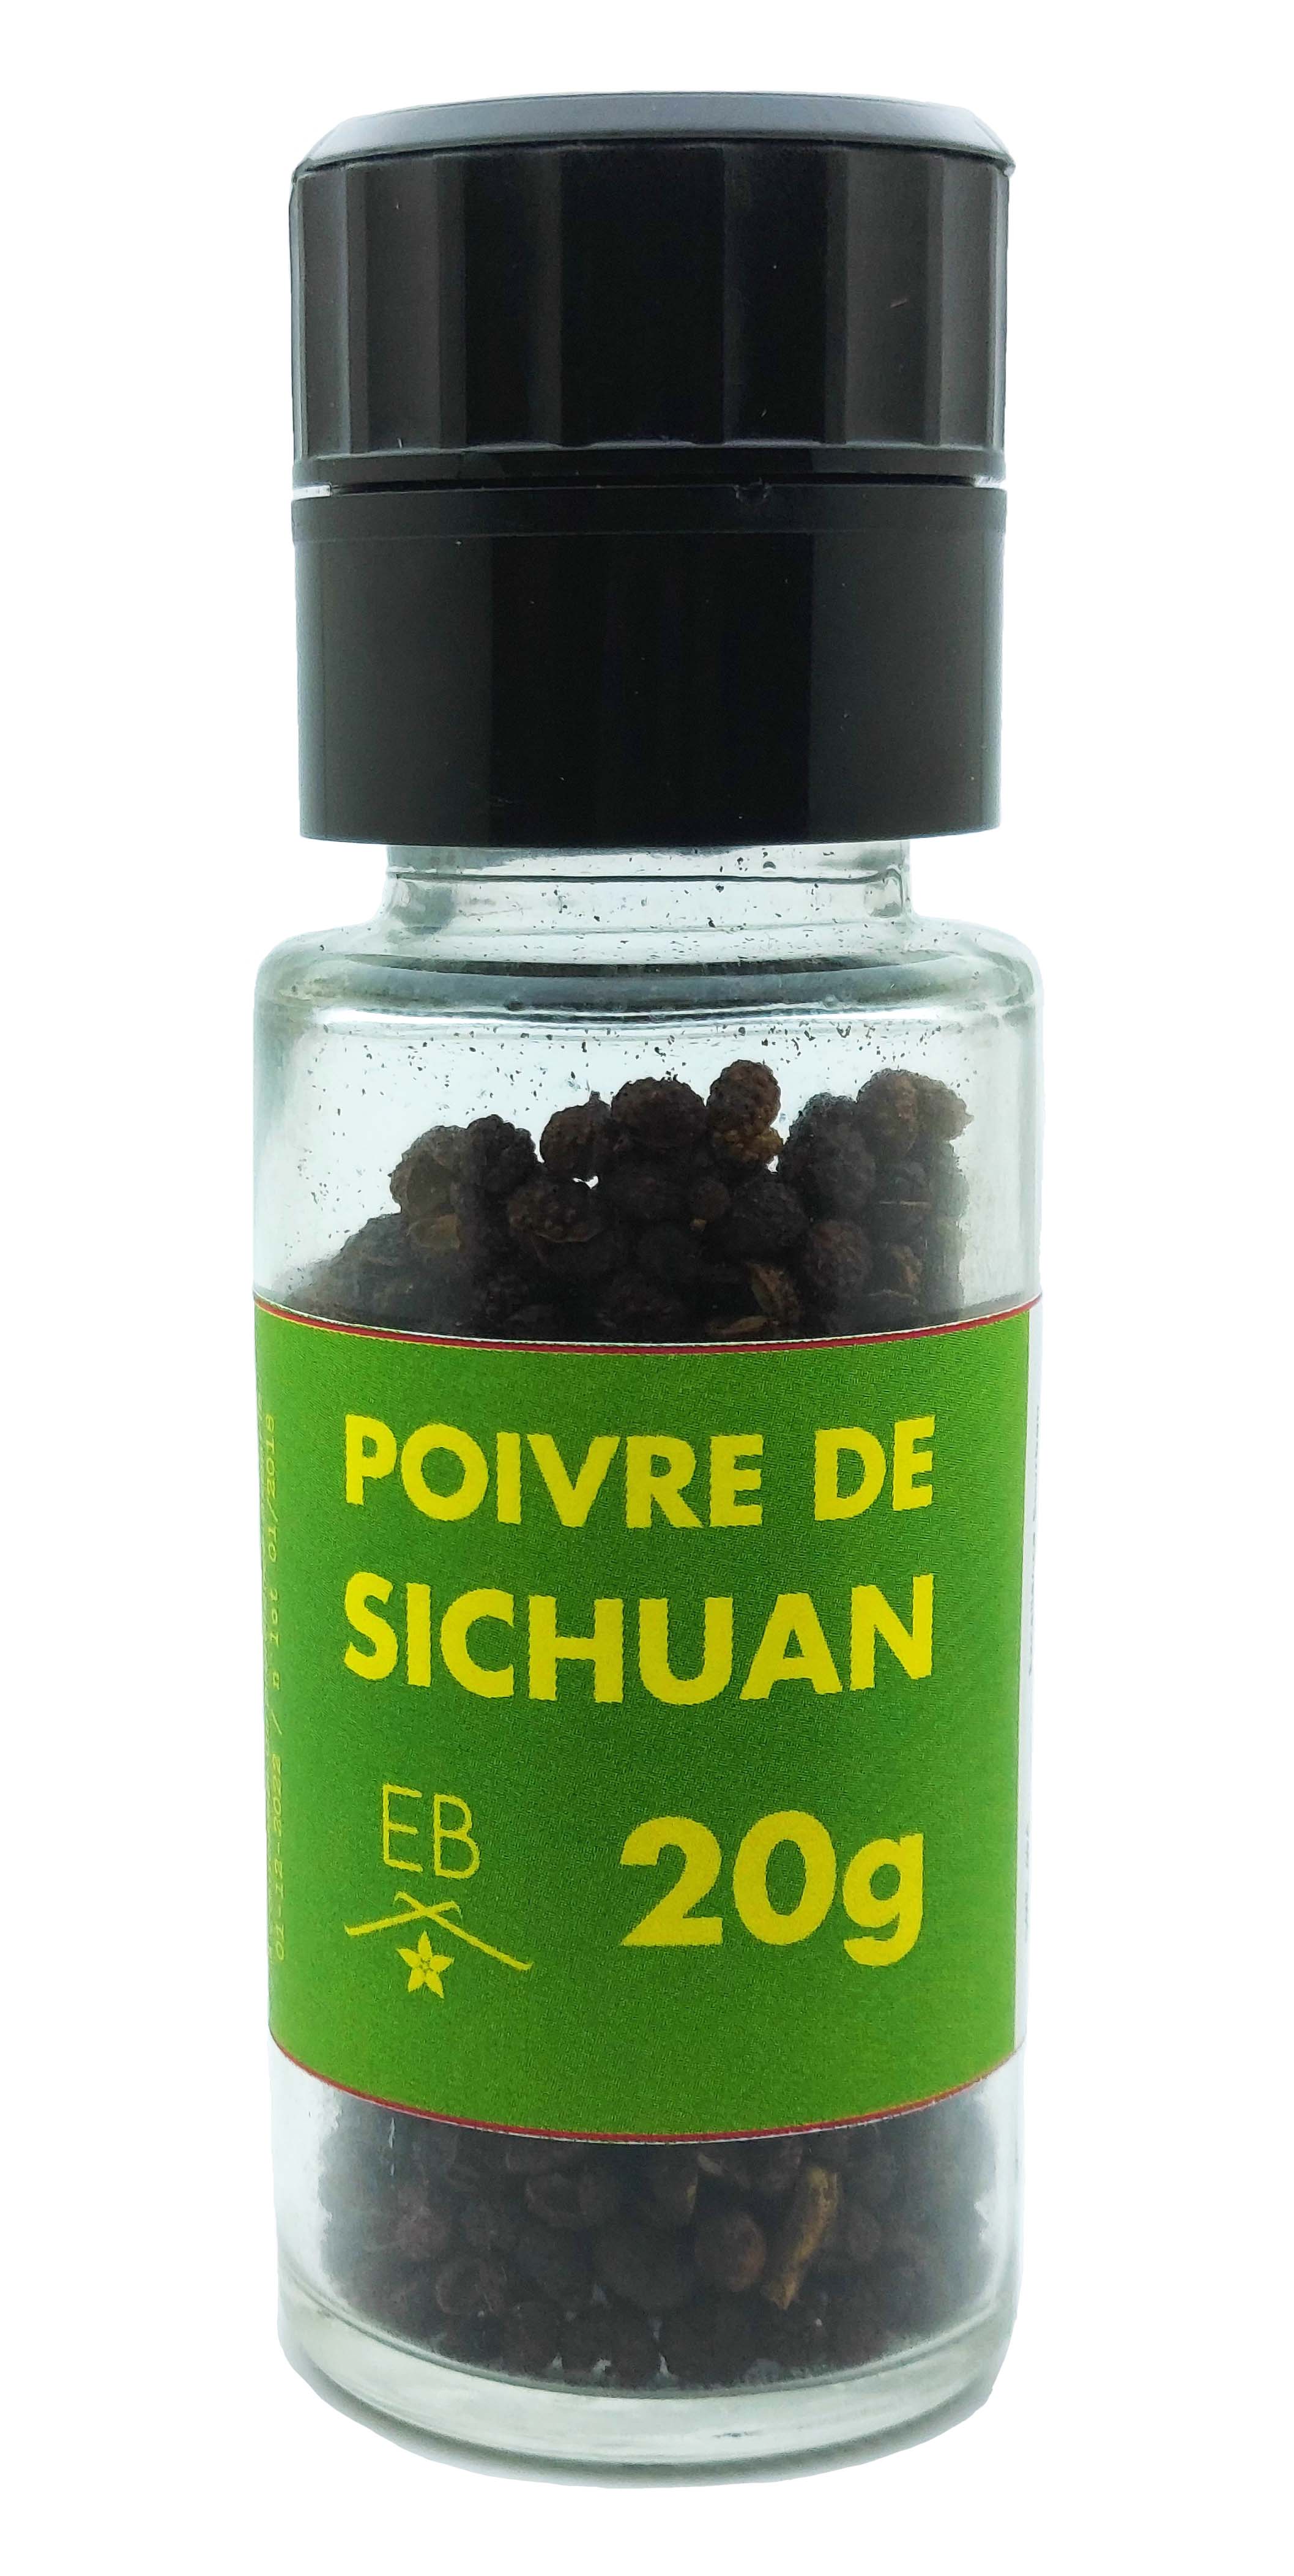 Culture du poivre de Sichuan en France